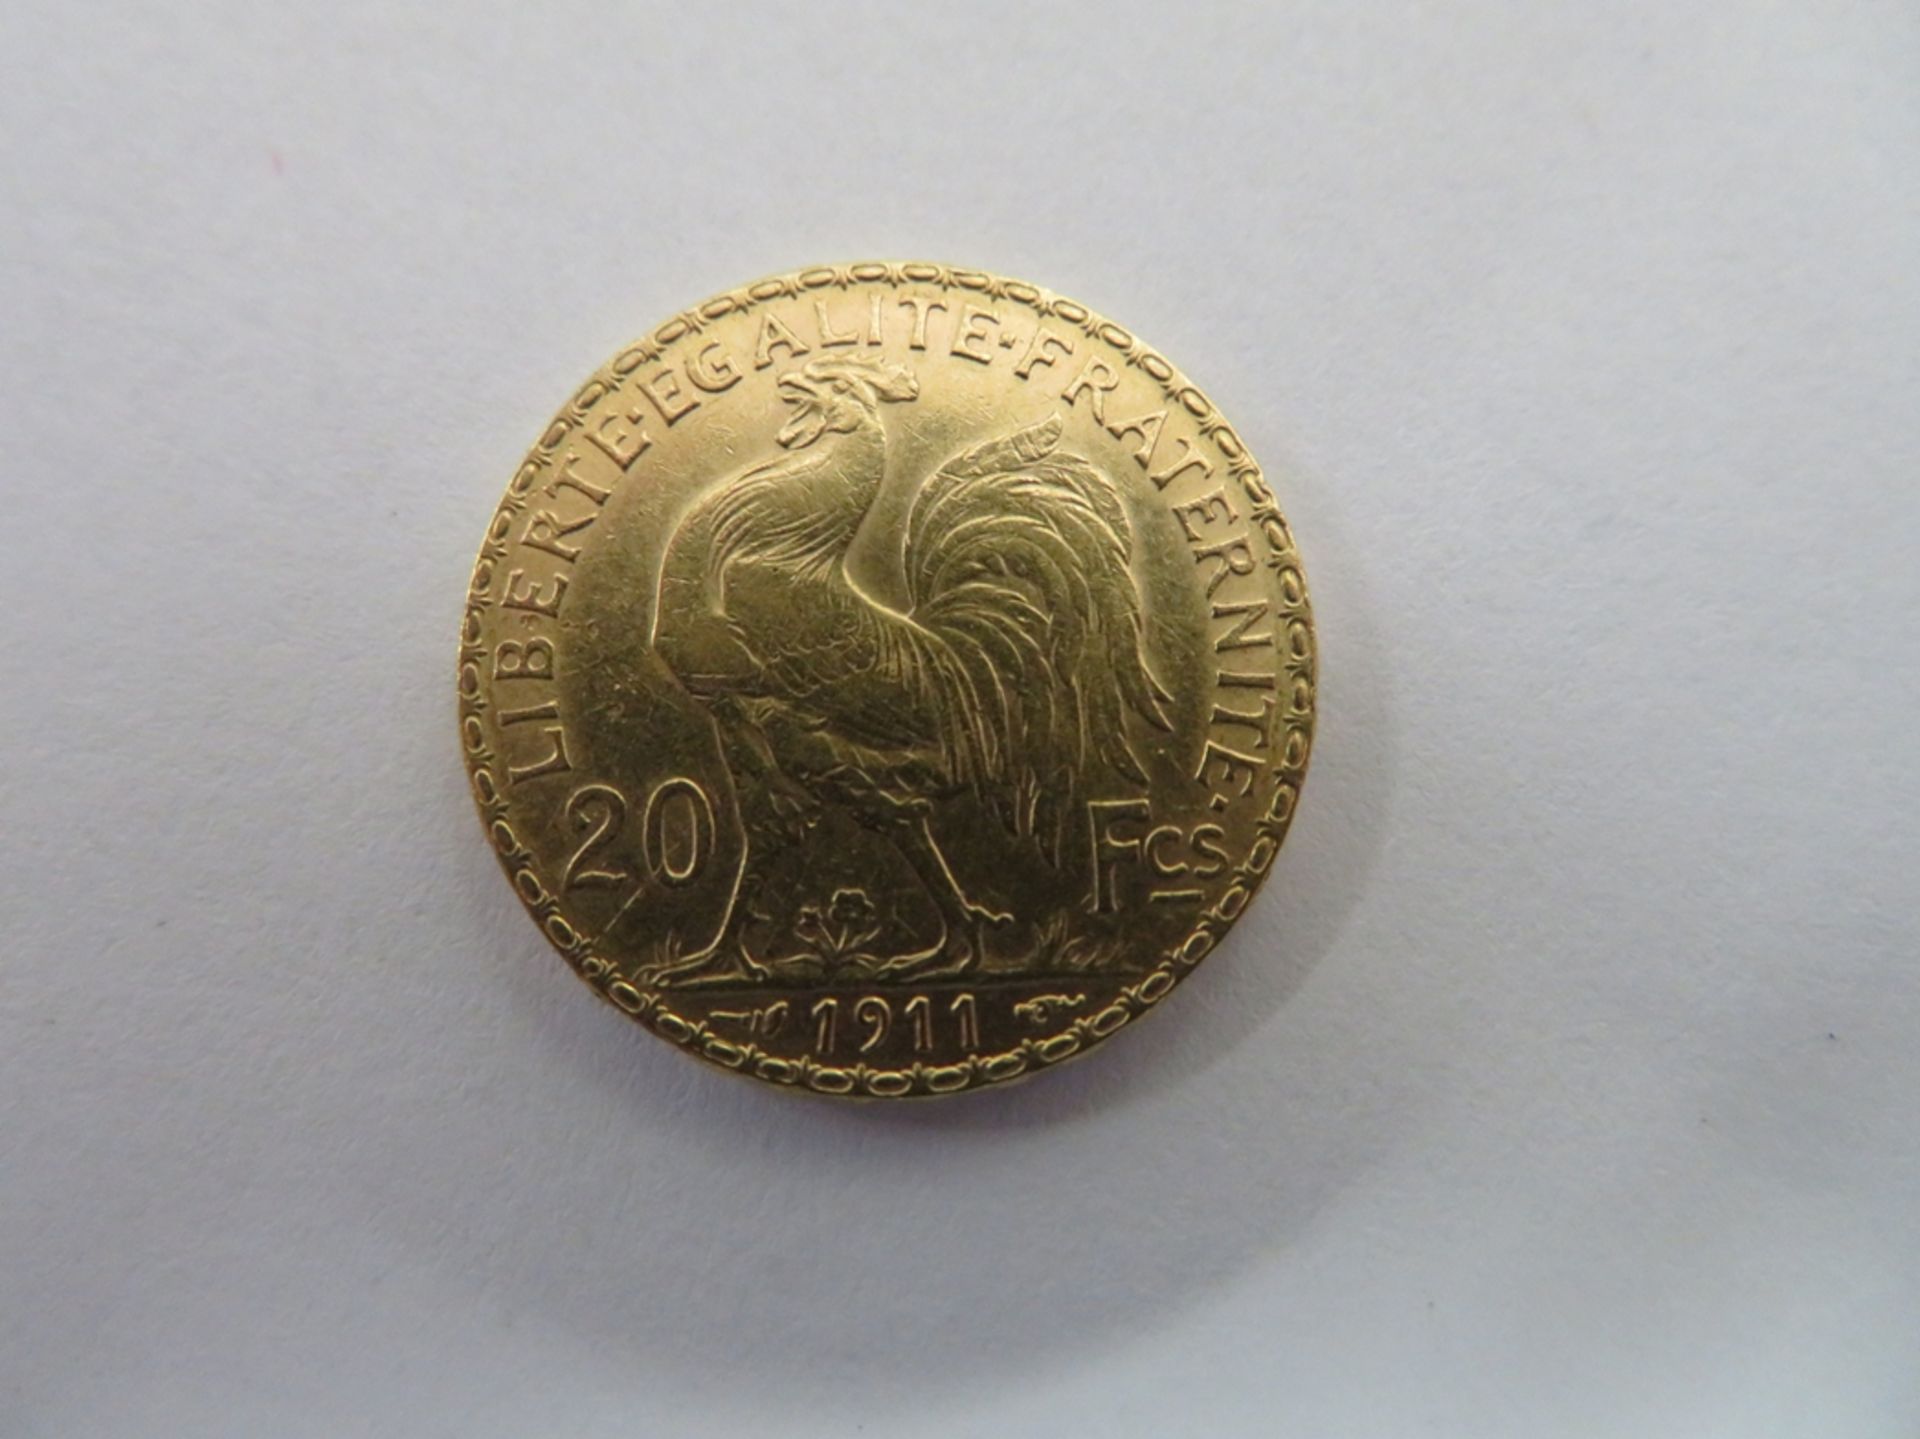 Goldmünze, Frankreich, 20 Francs, 1911, 6,3 g, d 2,1 cm. - Image 2 of 2